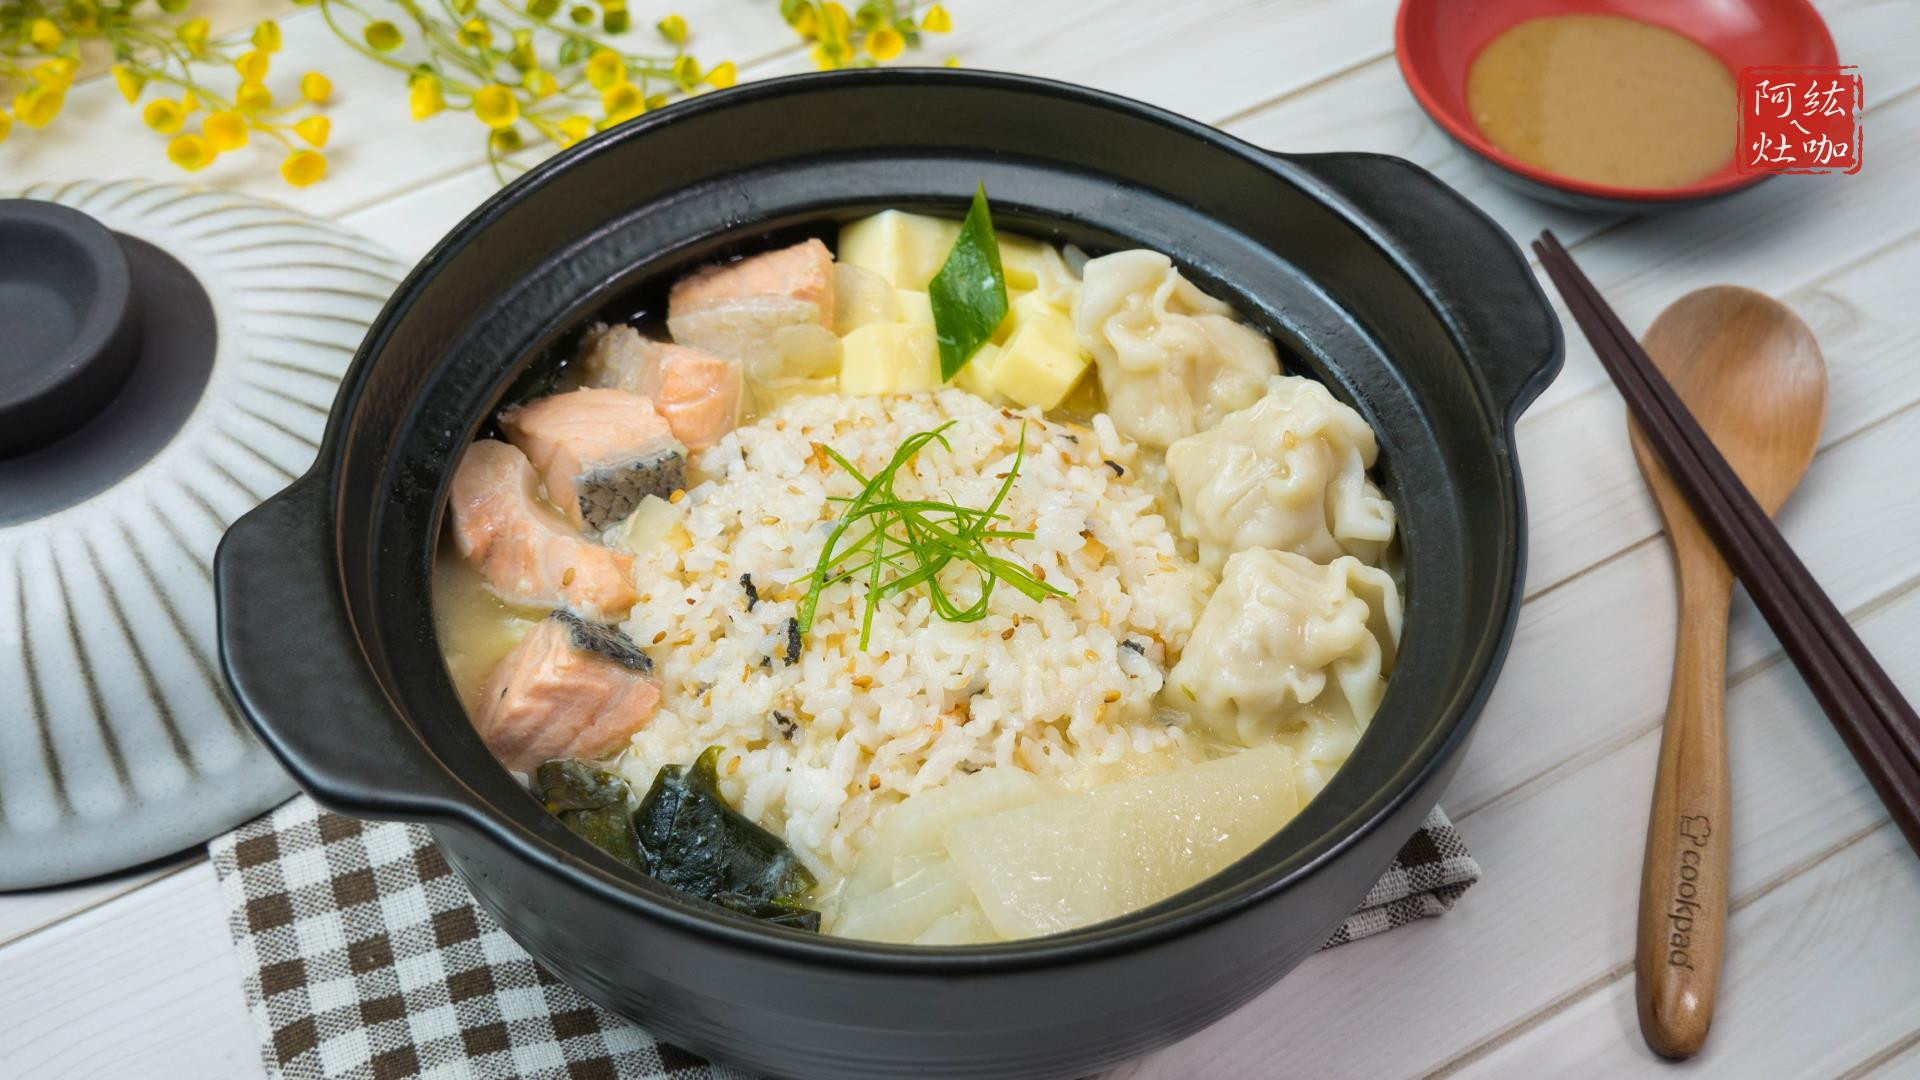 103 味噌鮭魚湯泡飯by 阿紘ㄟ灶咖🍖 - 愛料理